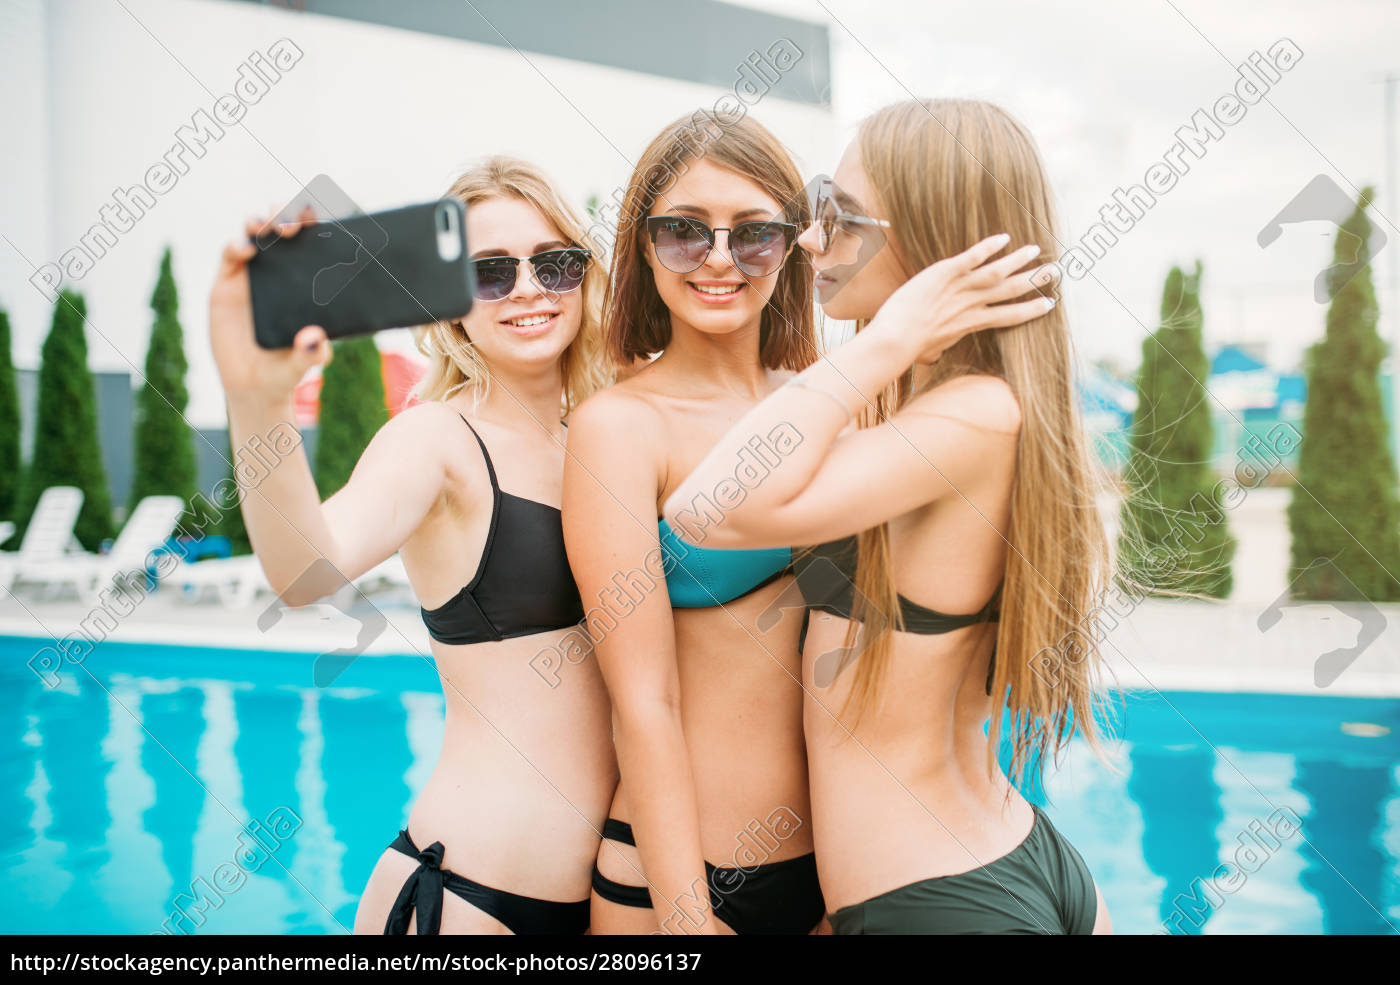 Sexy teens selfie